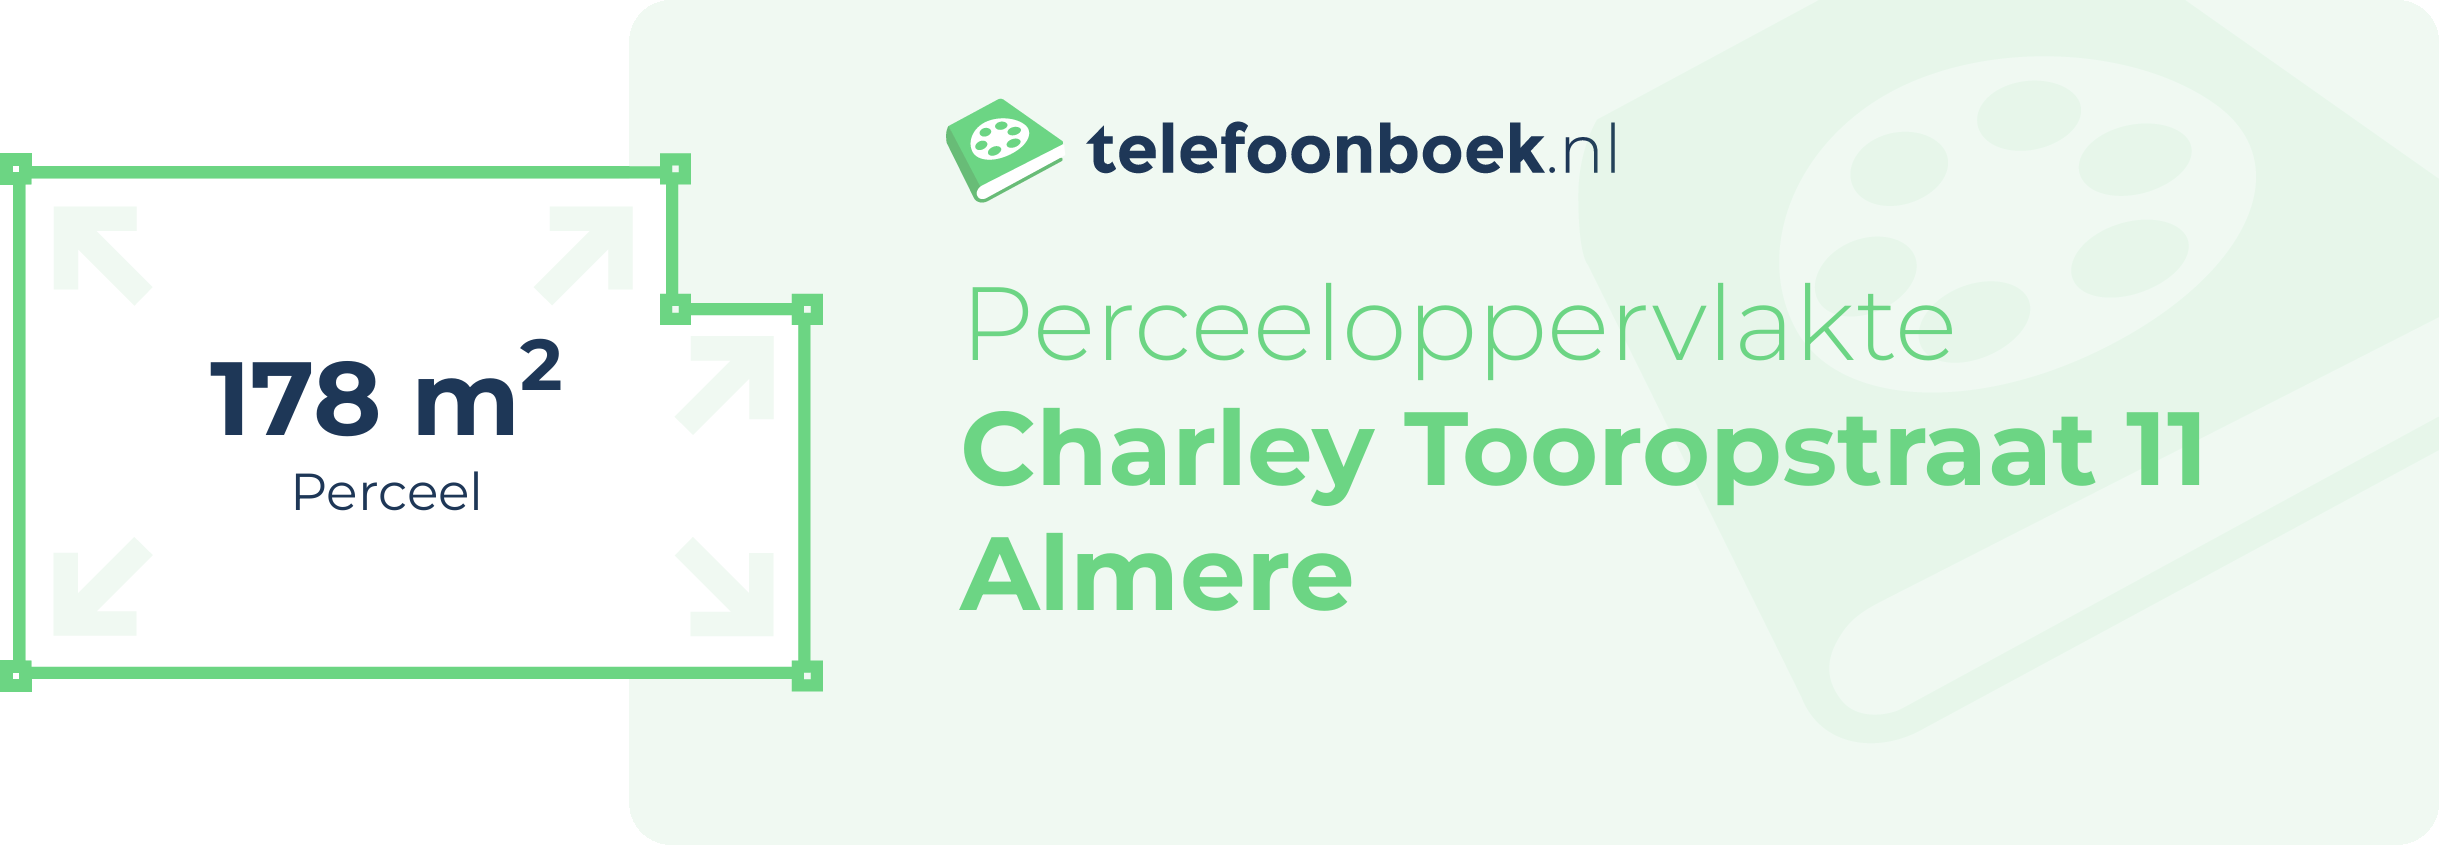 Perceeloppervlakte Charley Tooropstraat 11 Almere